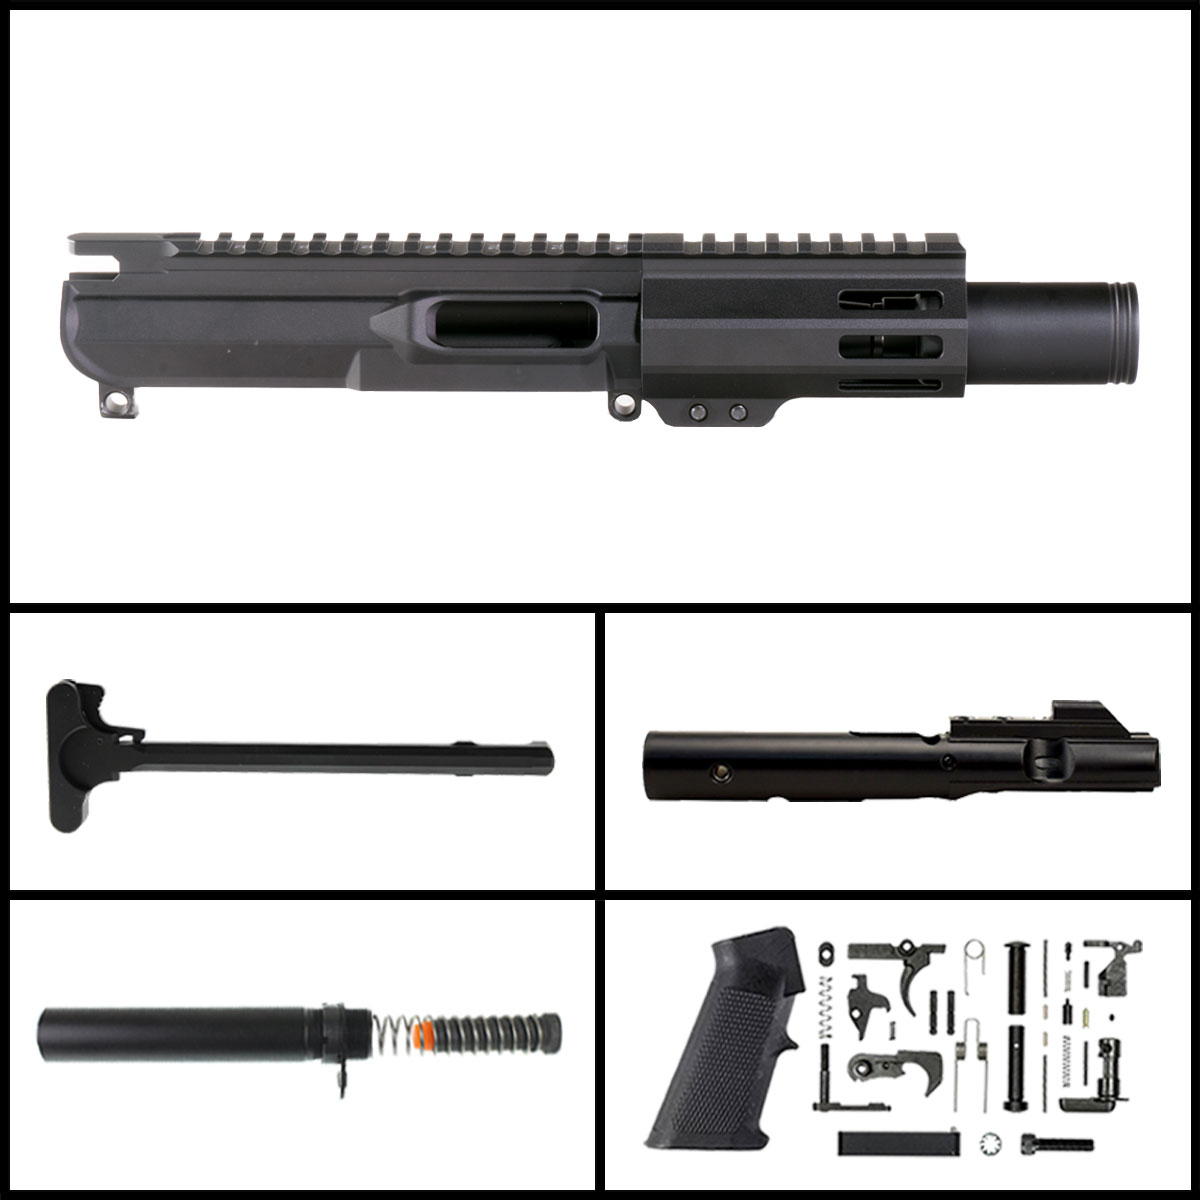 OTD 'Somber Glow' 4-inch AR-15 9mm Nitride Pistol Full Build Kit